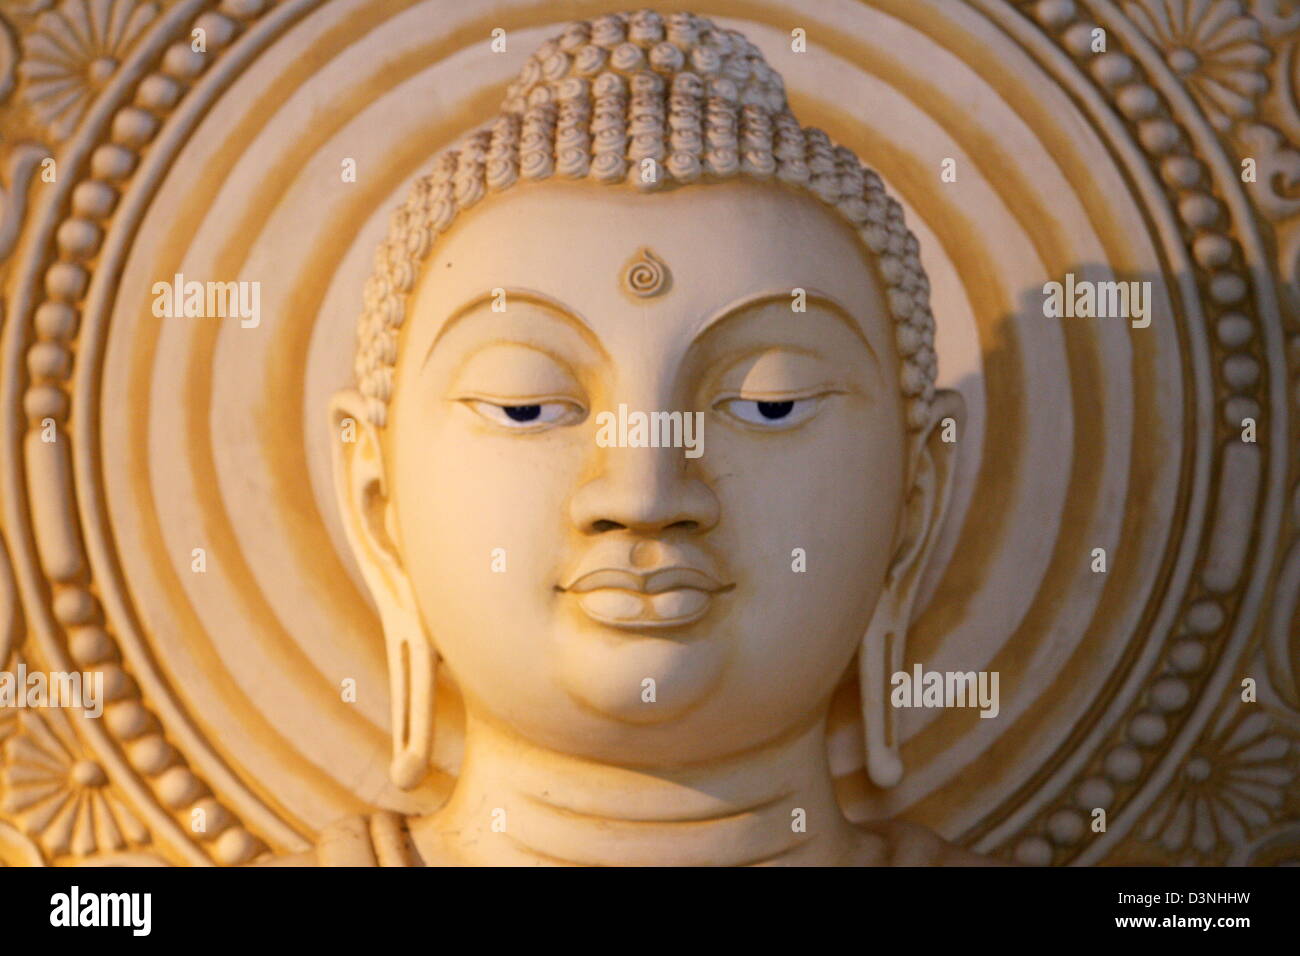 La foto mostra la pacifica visage della meditazione Buddha Siddharta Gautama nel Tempio Maharagama in Colombo, Sri Lanka, 24 aprile 2006. Foto: Maurizio Gambarini Foto Stock